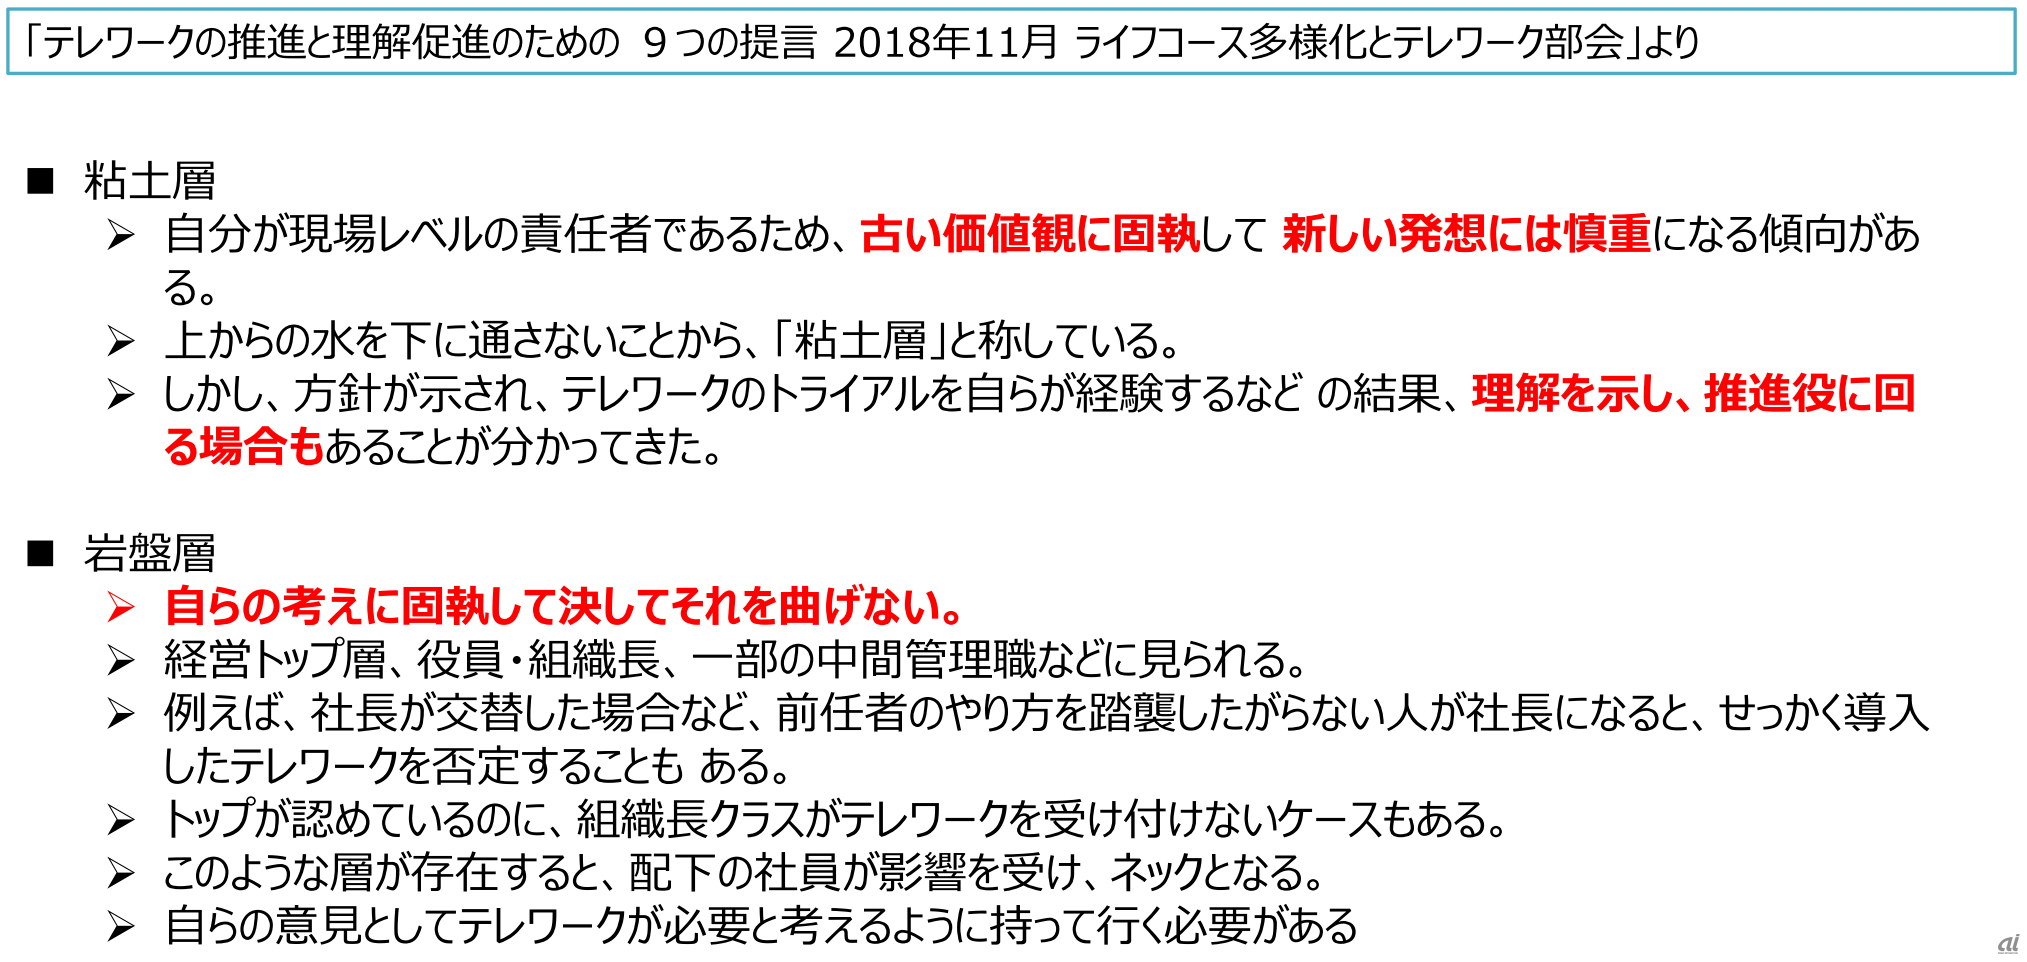 2018年11月に日本テレワーク協会が発表した「テレワークの推進と理解促進のための9つの提言」の一部（出典：日本テレワーク協会）